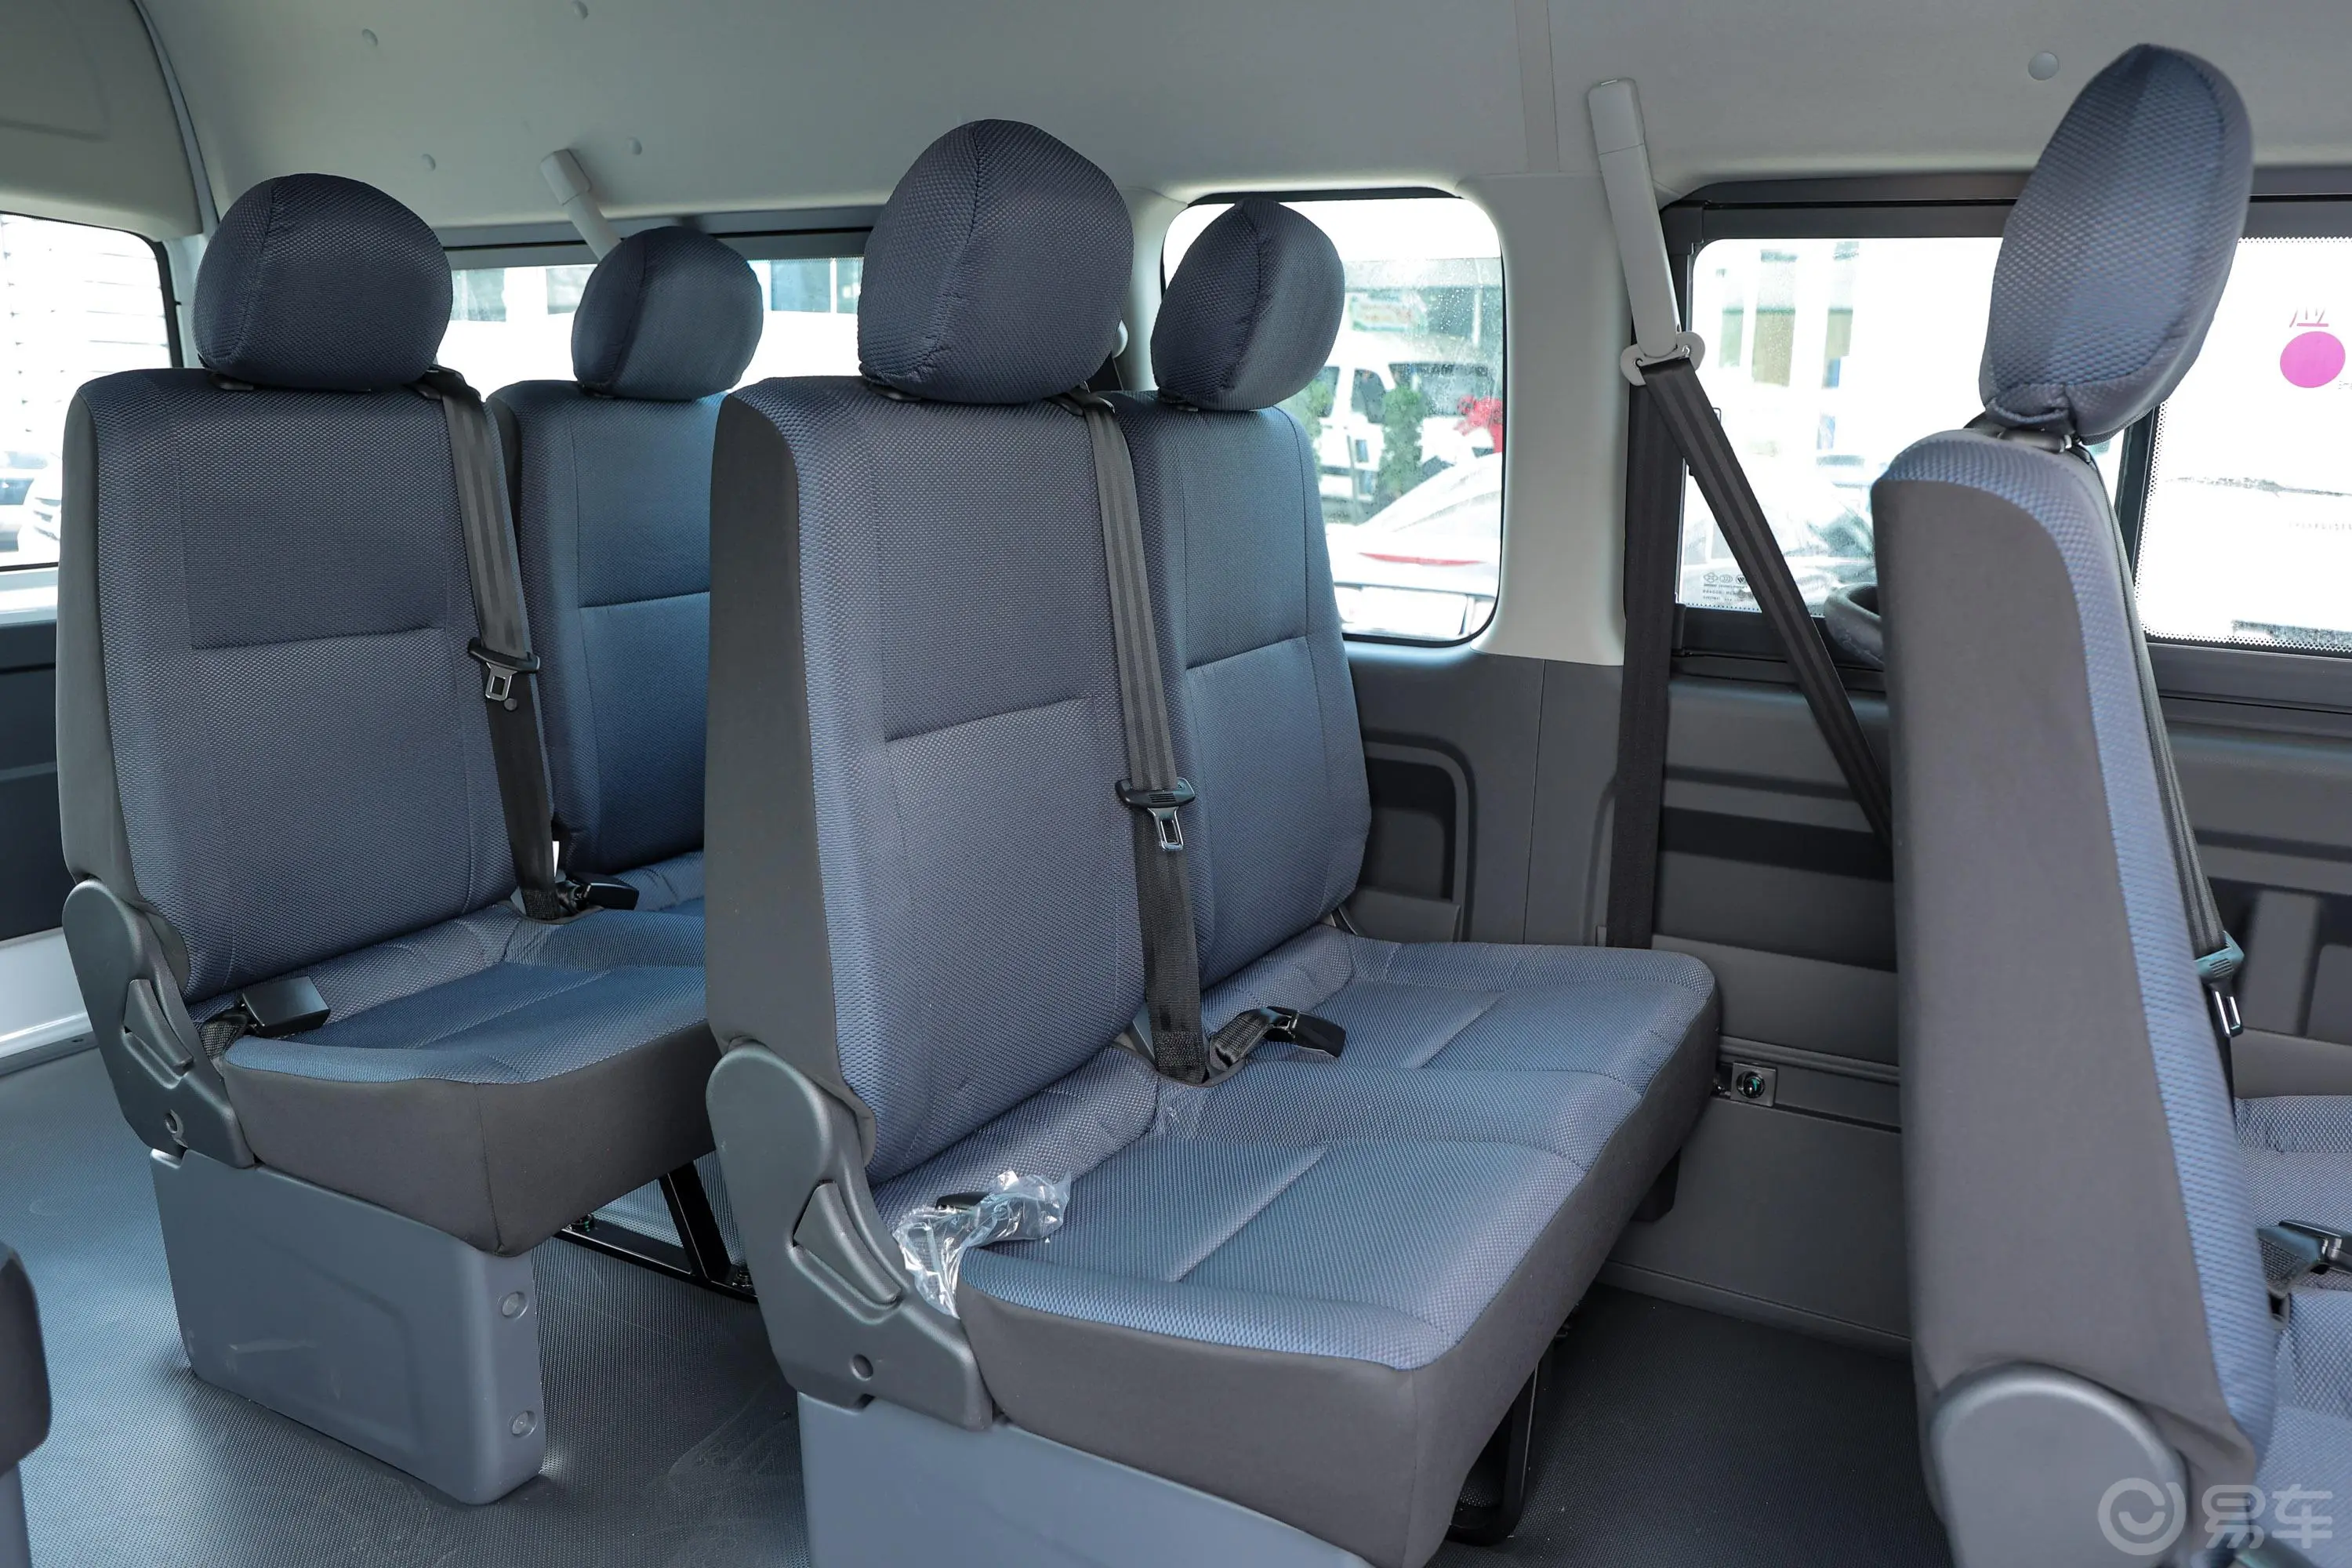 风景G9商旅版 2.4L 长轴高顶客车 9座第三排座椅